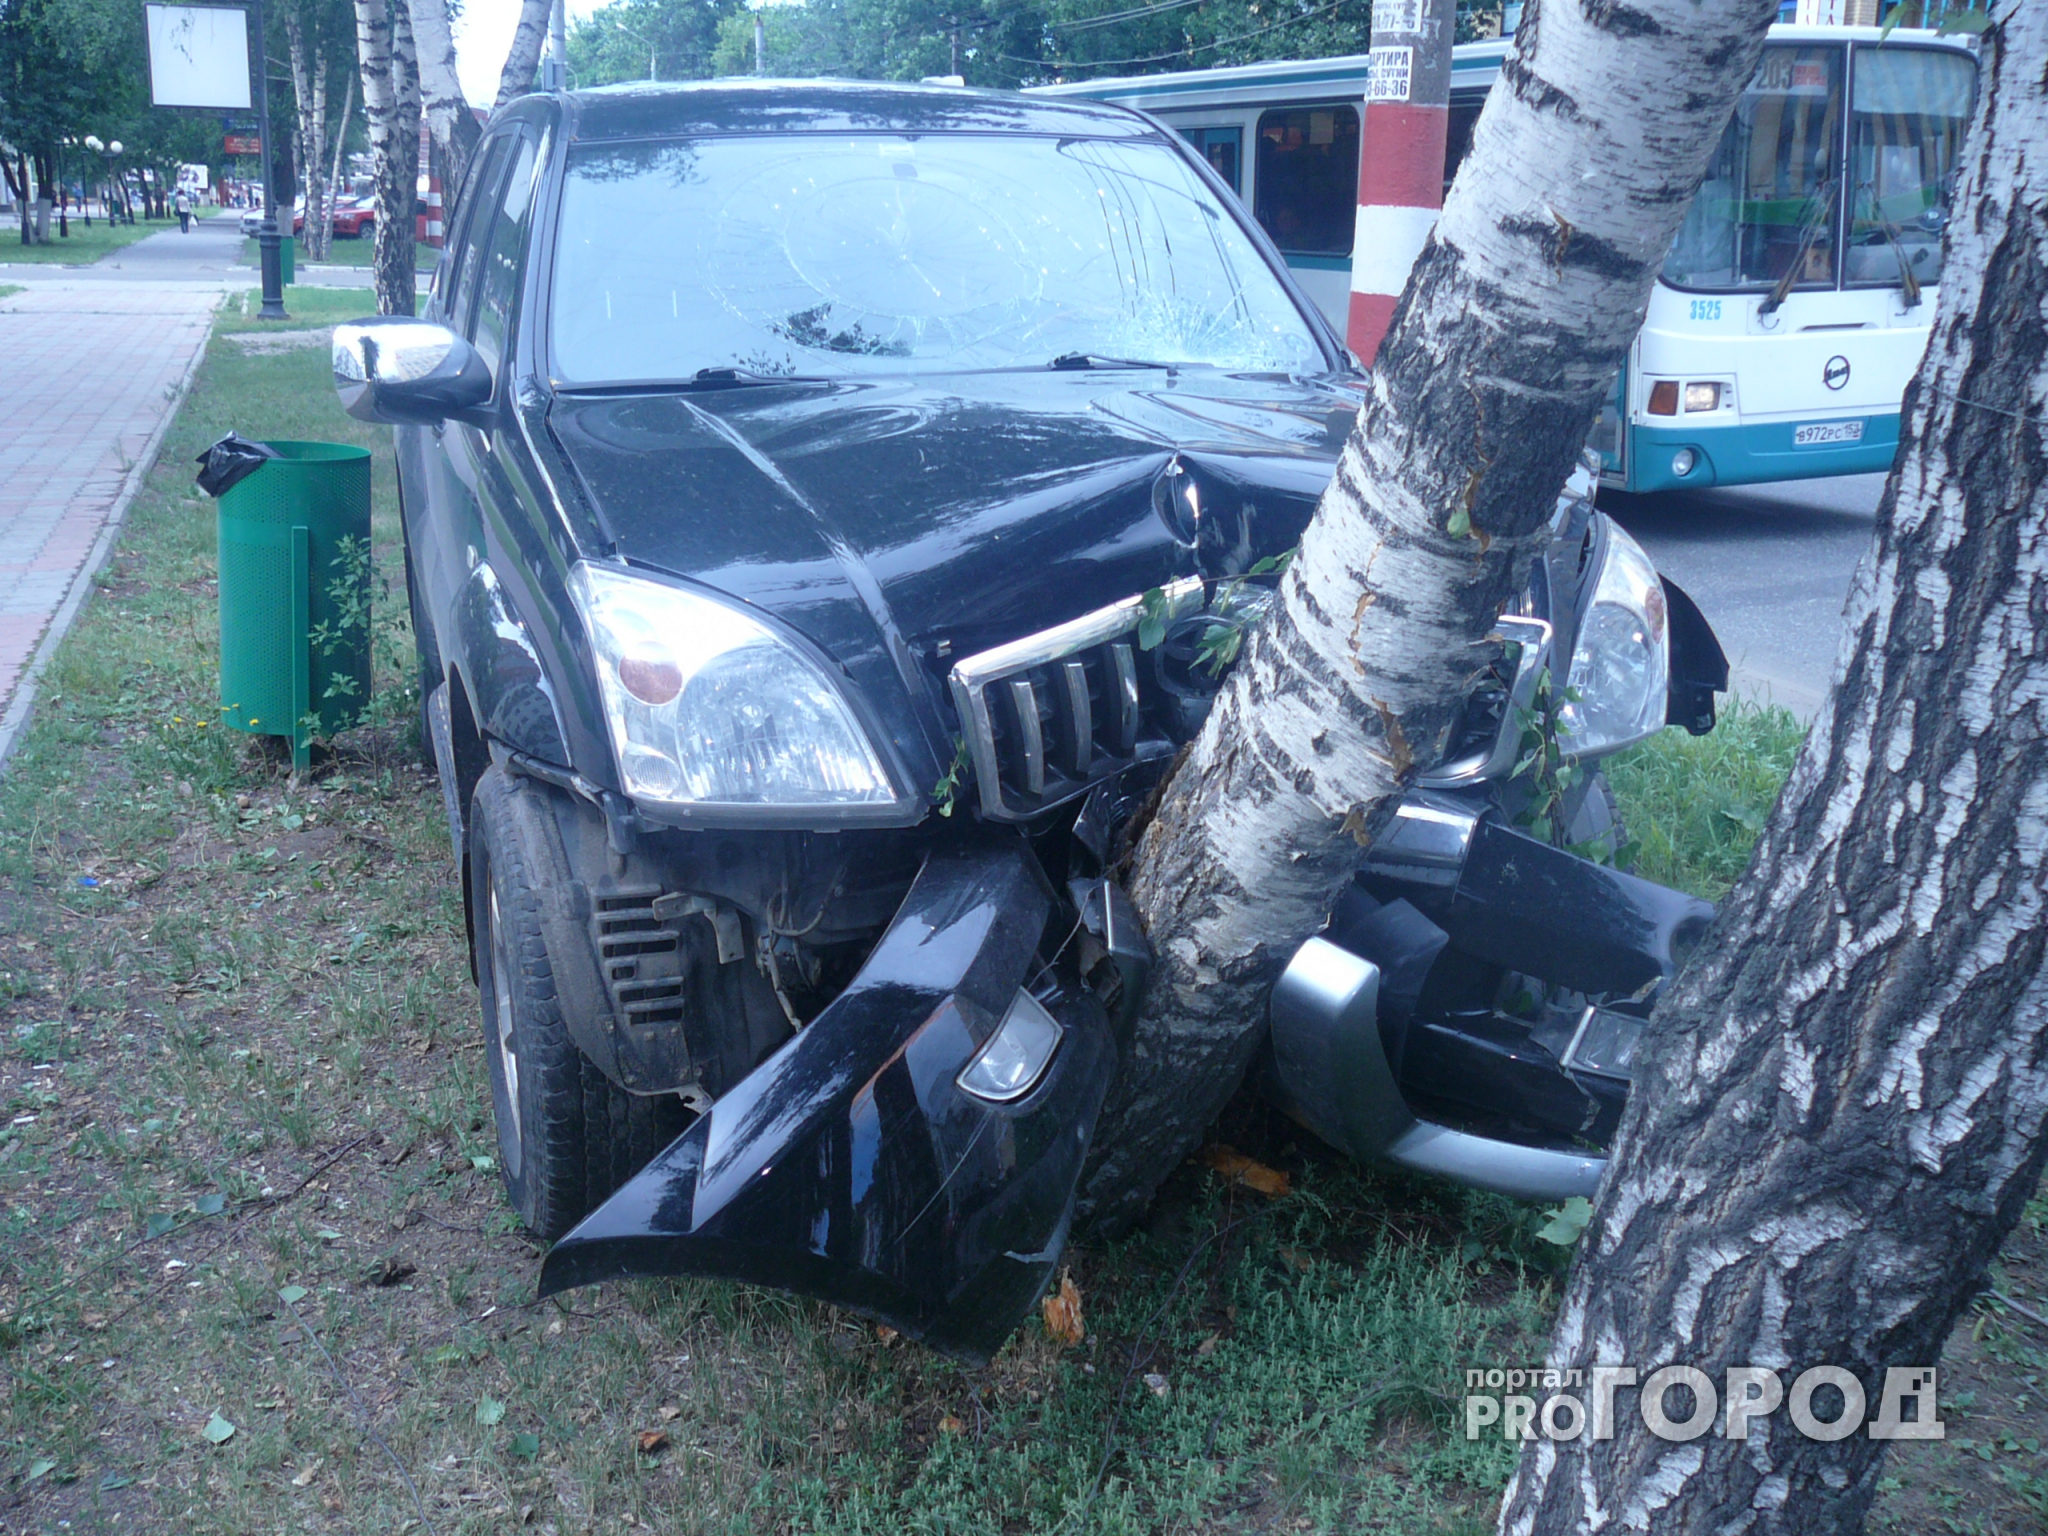 В Нижнем Новгороде иномарка влетела в дерево: есть погибшие